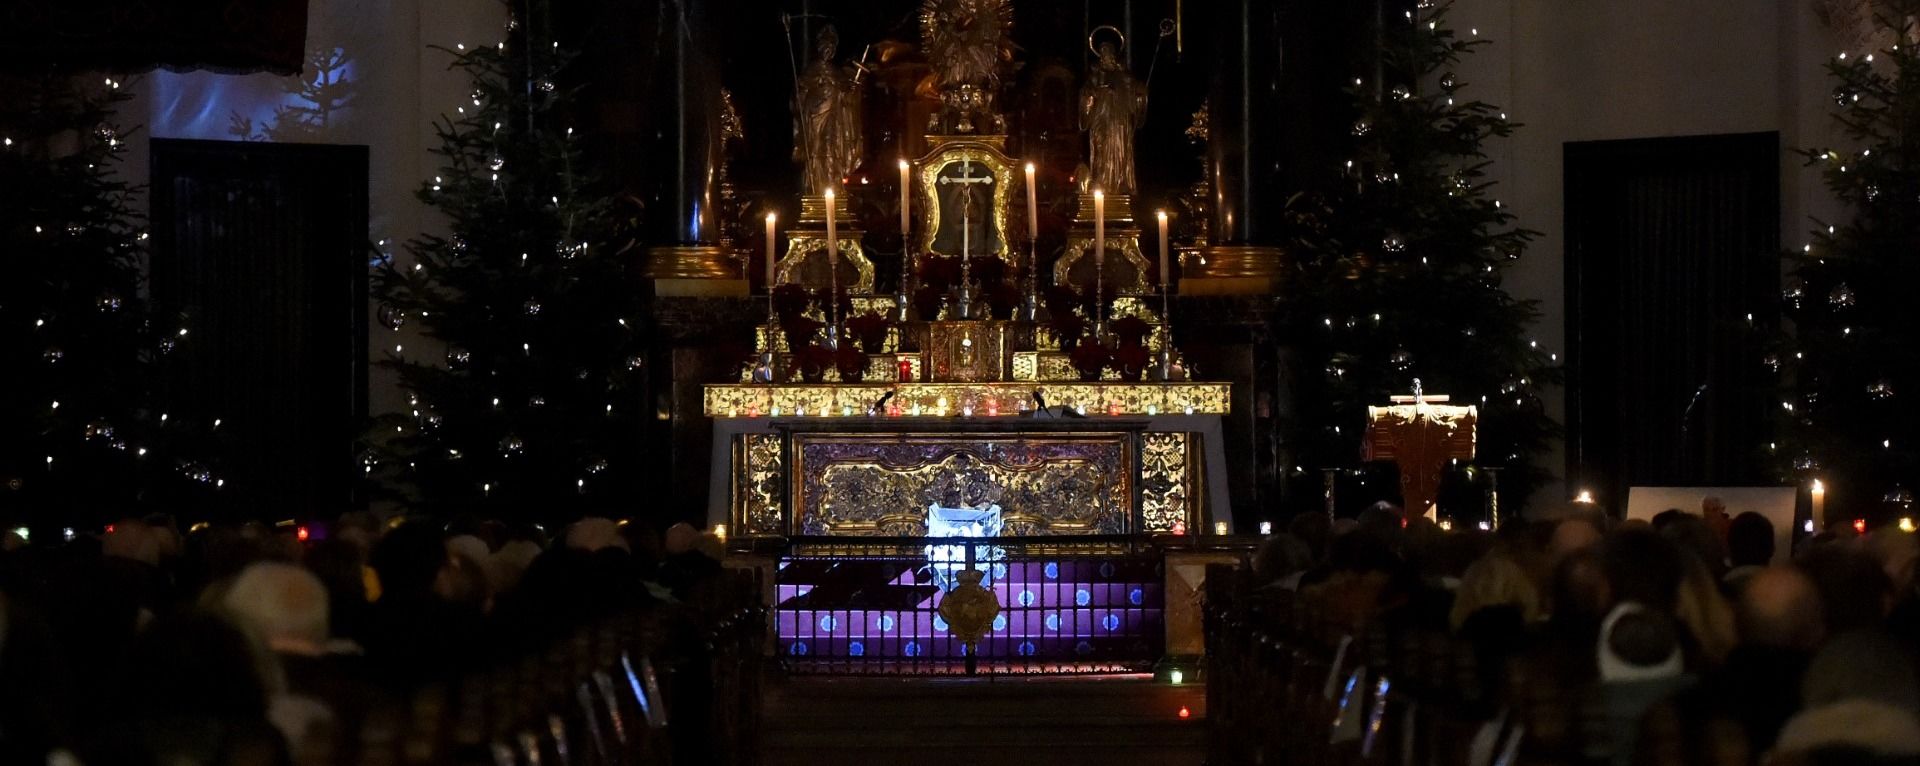 Weihnachtliche Klänge beim Lichterkonzert im Fuldaer Dom   